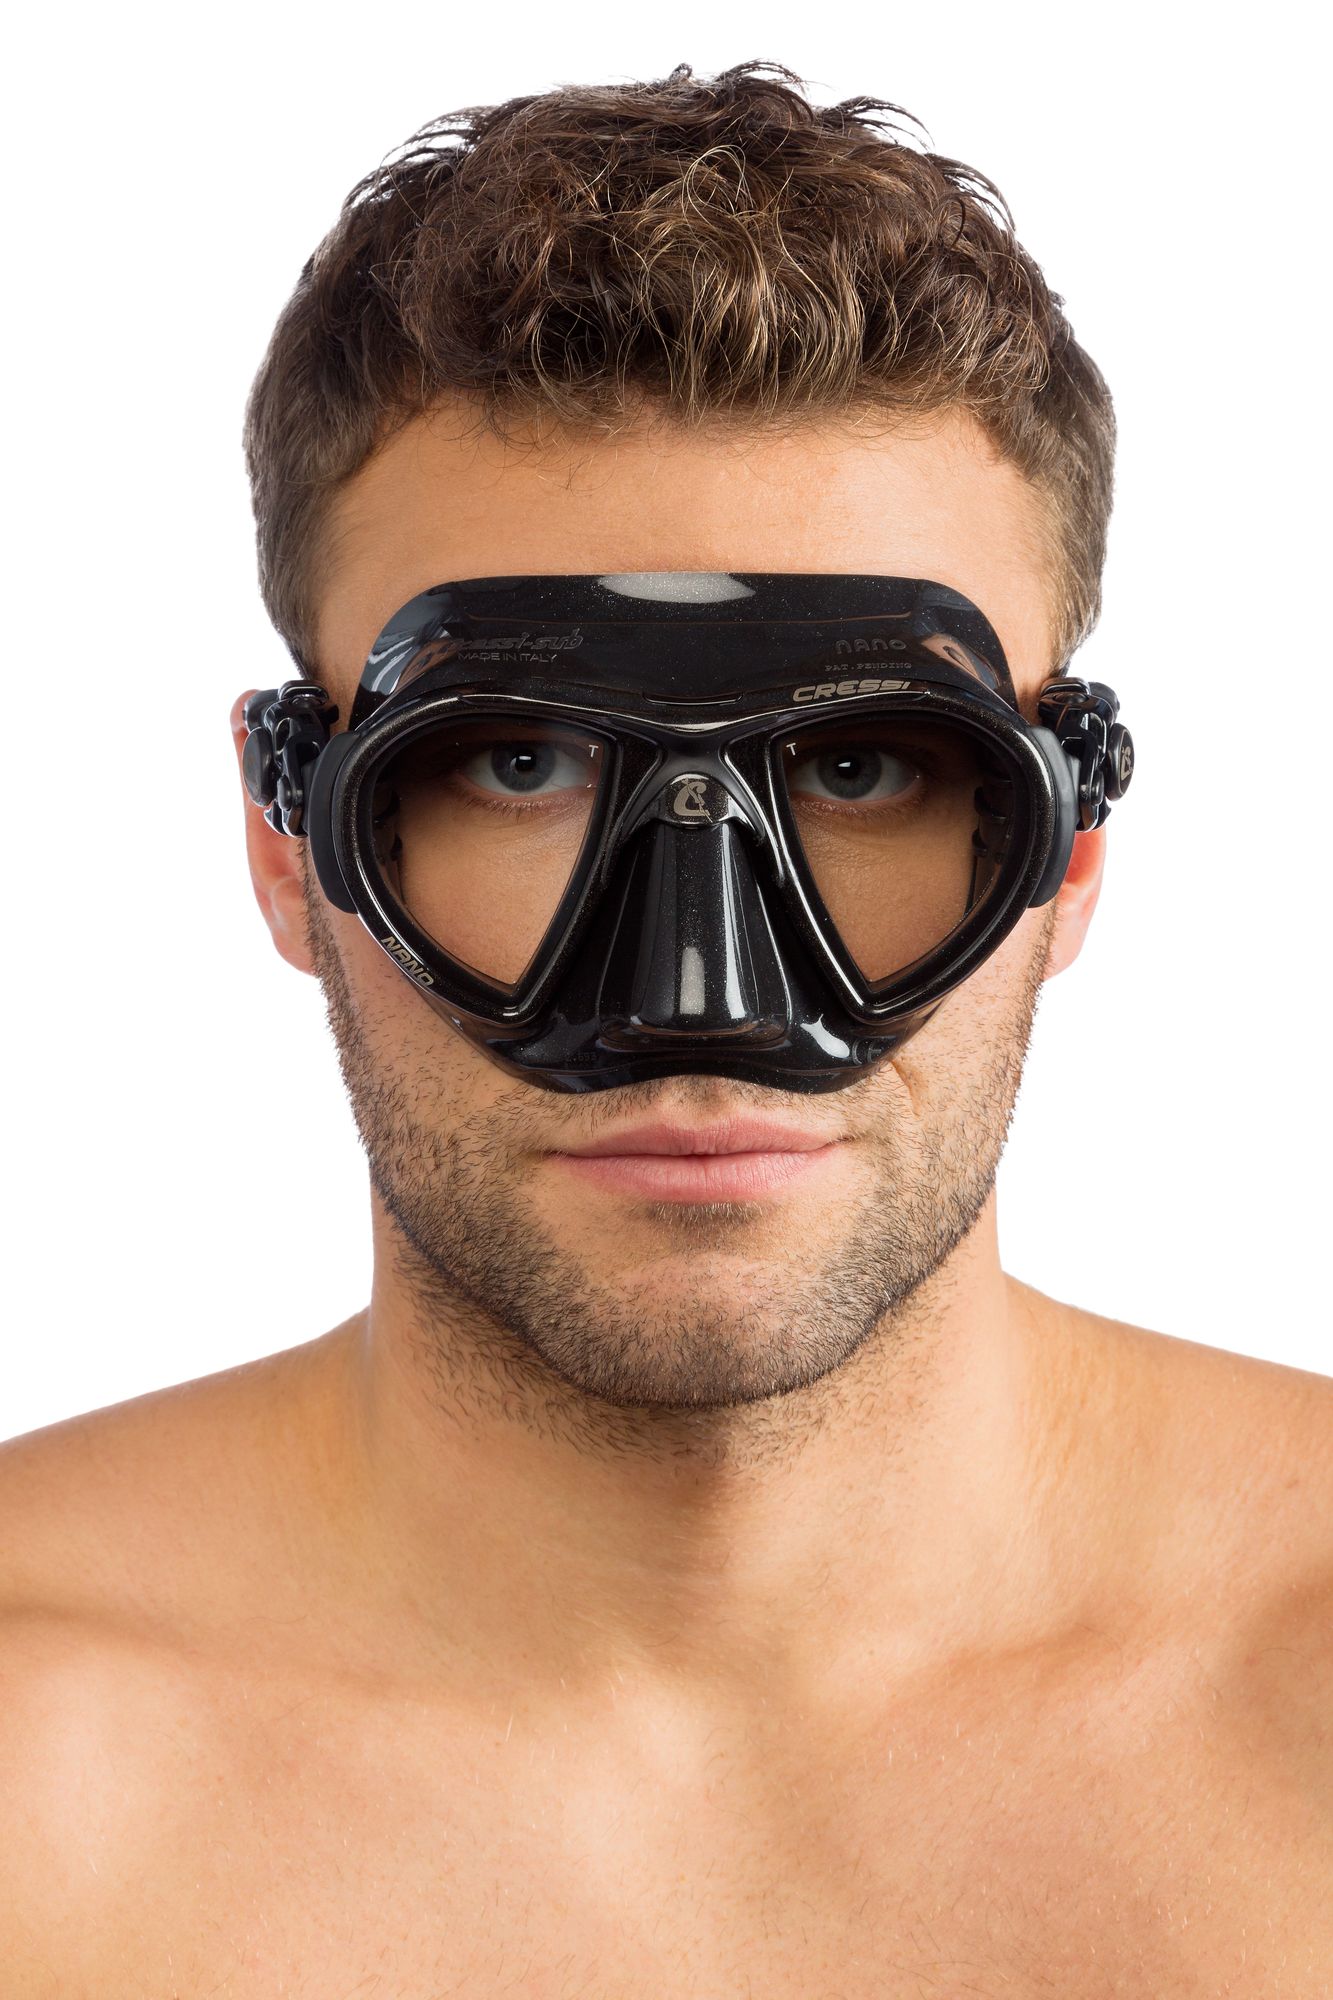 Nano Mask - Scuba mask, Snorkelling mask, Freediving mask